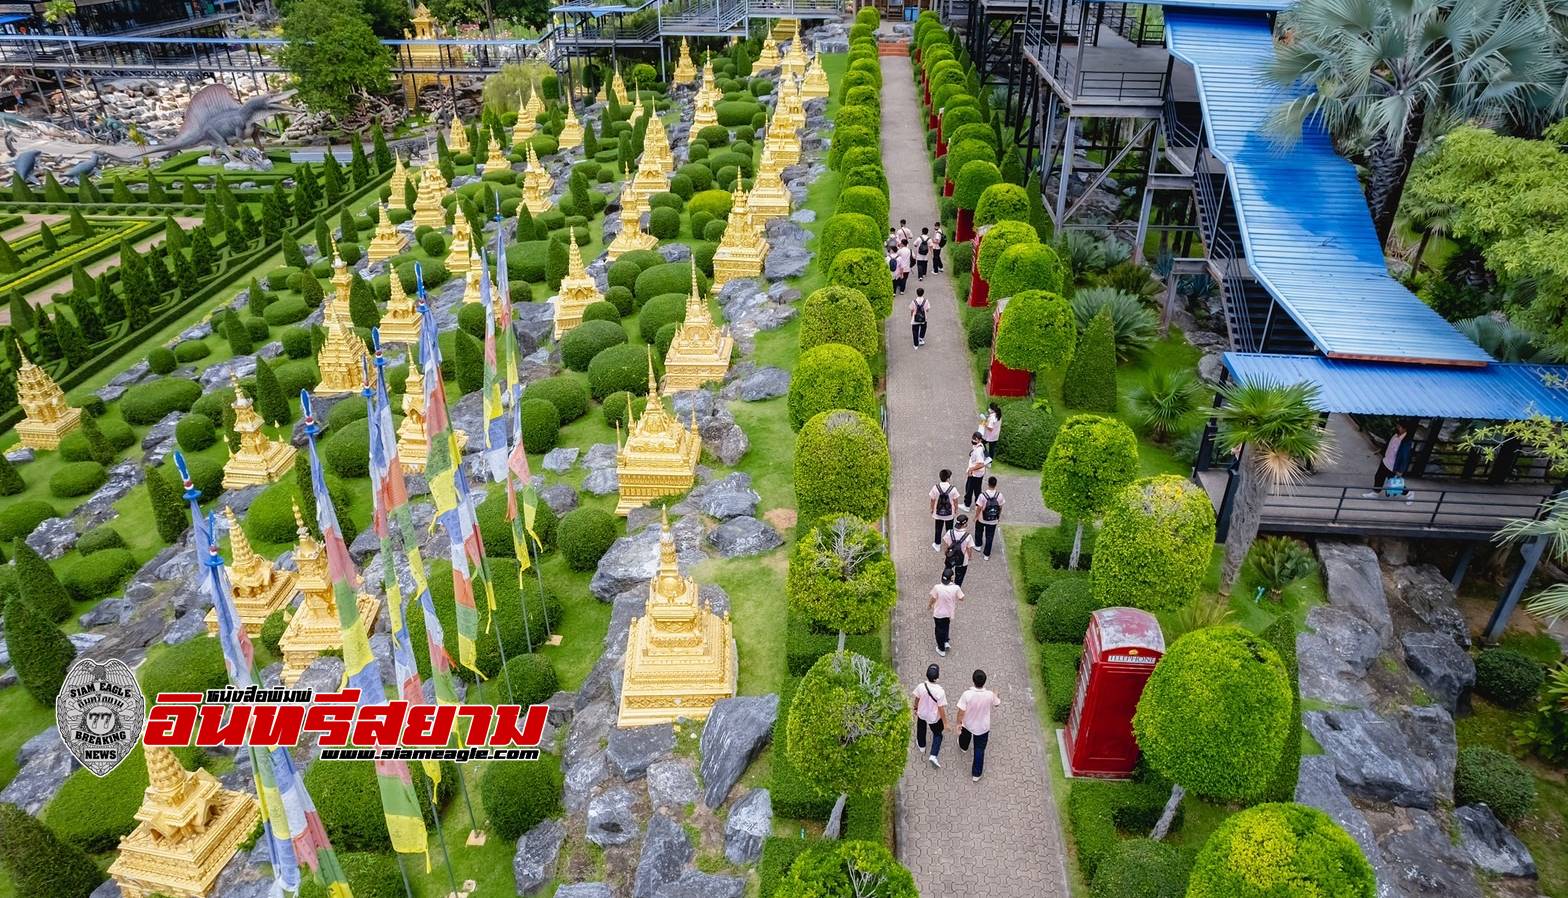 ชลบุรี-เมืองพัทยา พร้อมรองรับนักท่องเที่ยว ช่วงวันหยุดพิเศษการประชุม APEC 2022